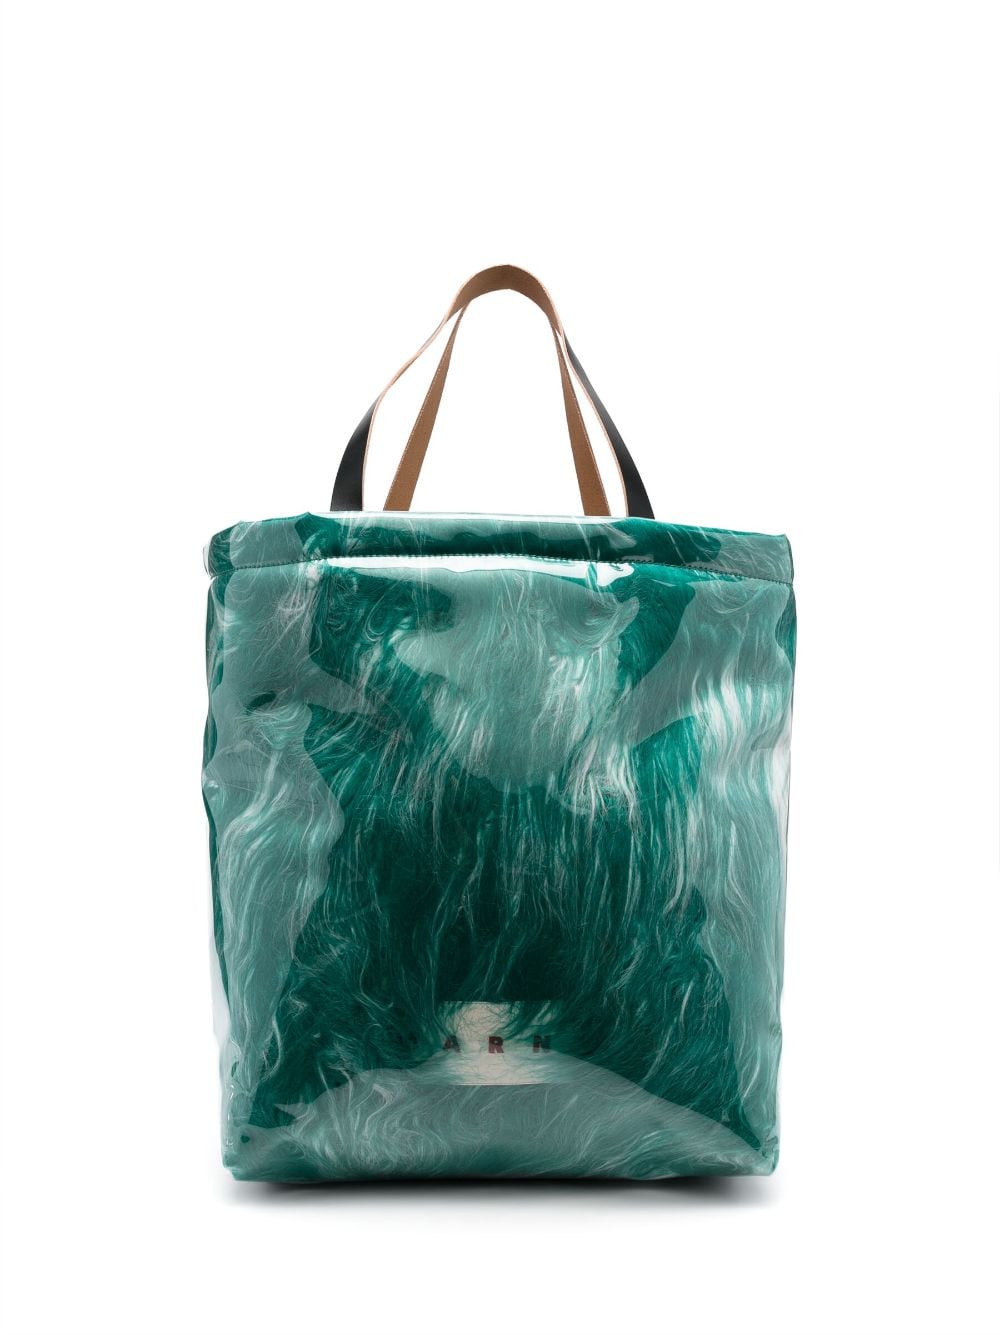 Marni covered-shearling tote bag - Green